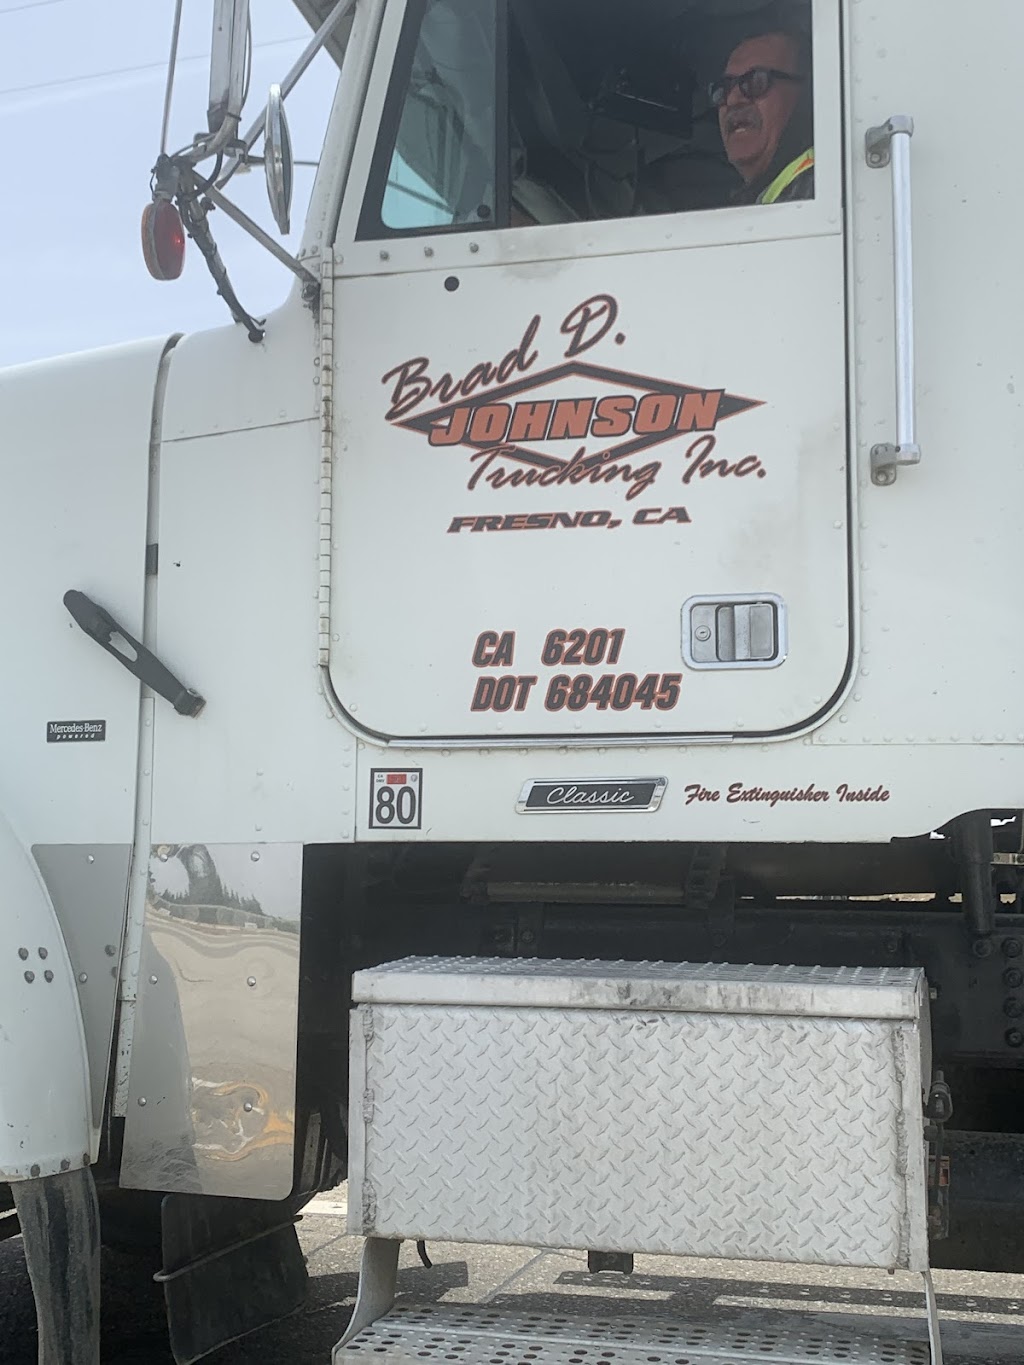 Brad Johnson Trucking | 3501 W Nielsen Ave, Fresno, CA 93706 | Phone: (559) 441-0300